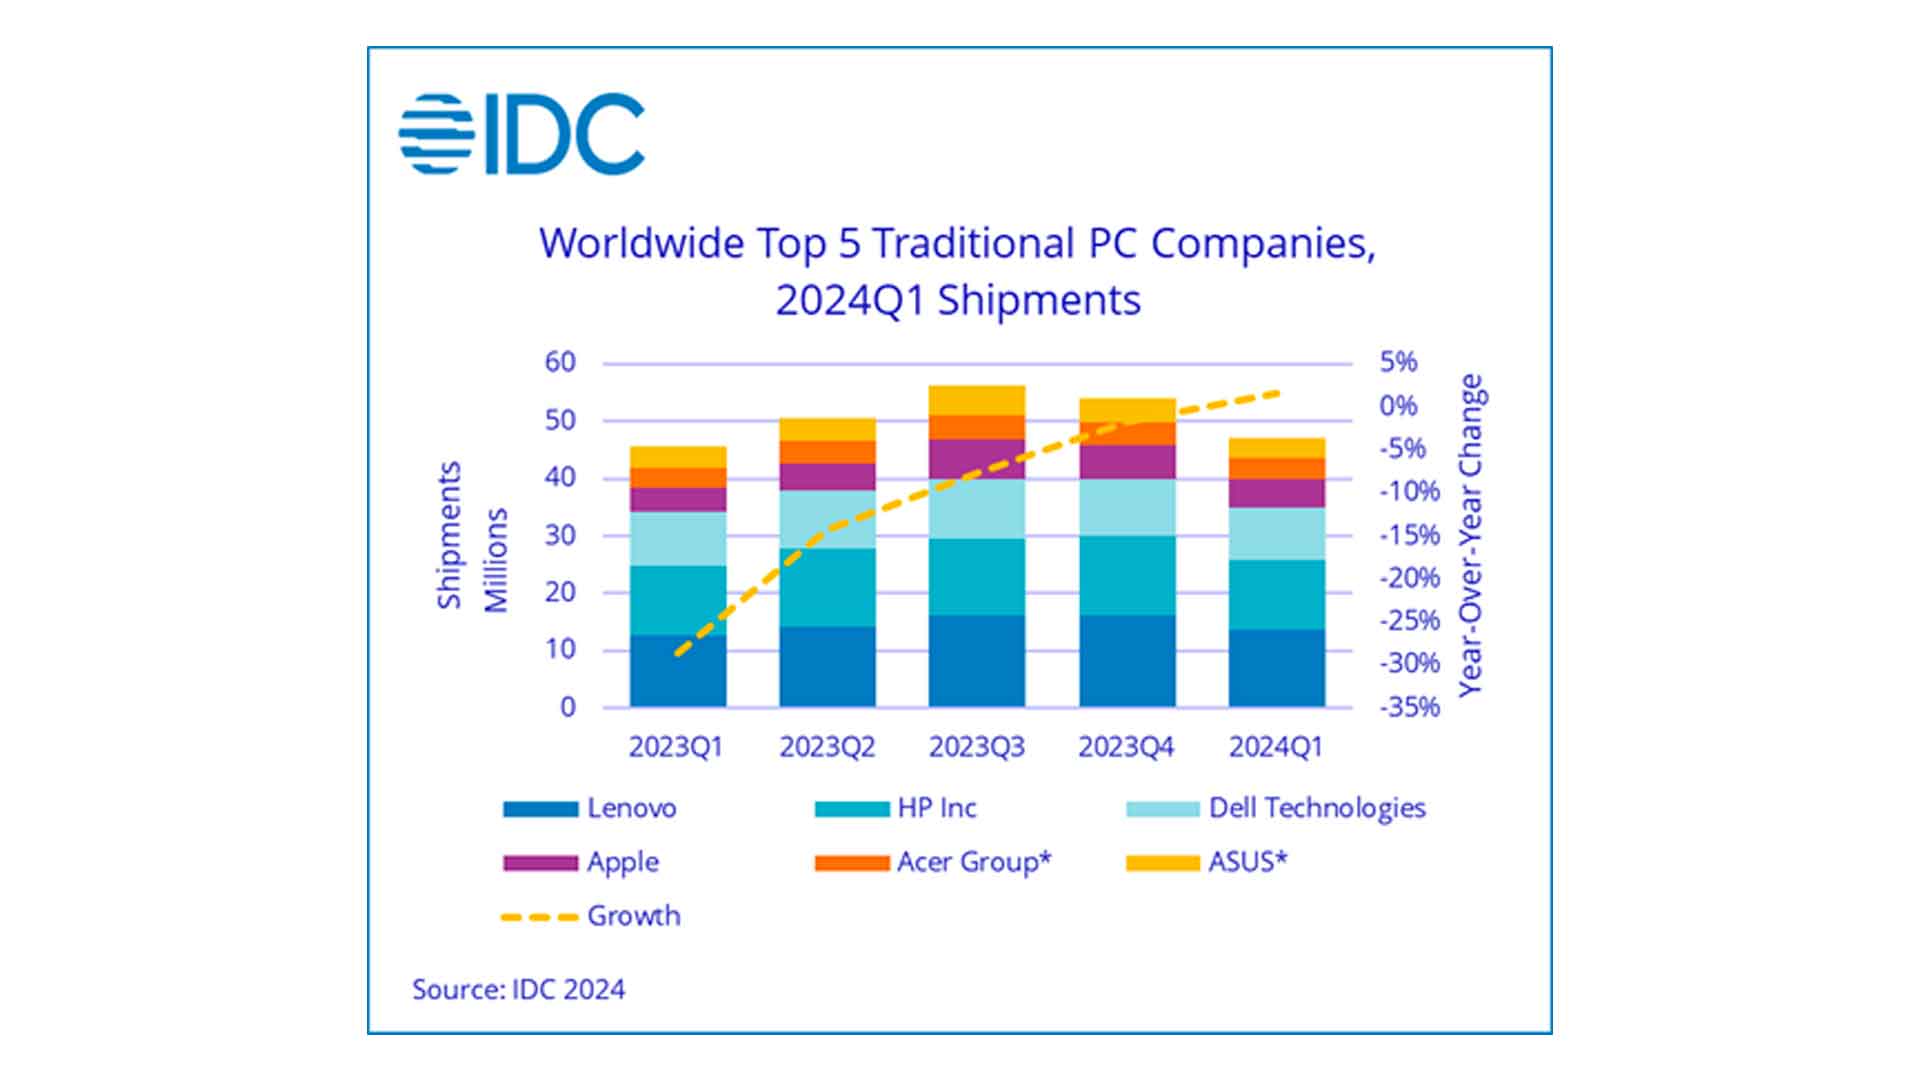 Evolution des parts de marché des différents constructeurs de PCs au niveau mondial - Source IDC avril 2024